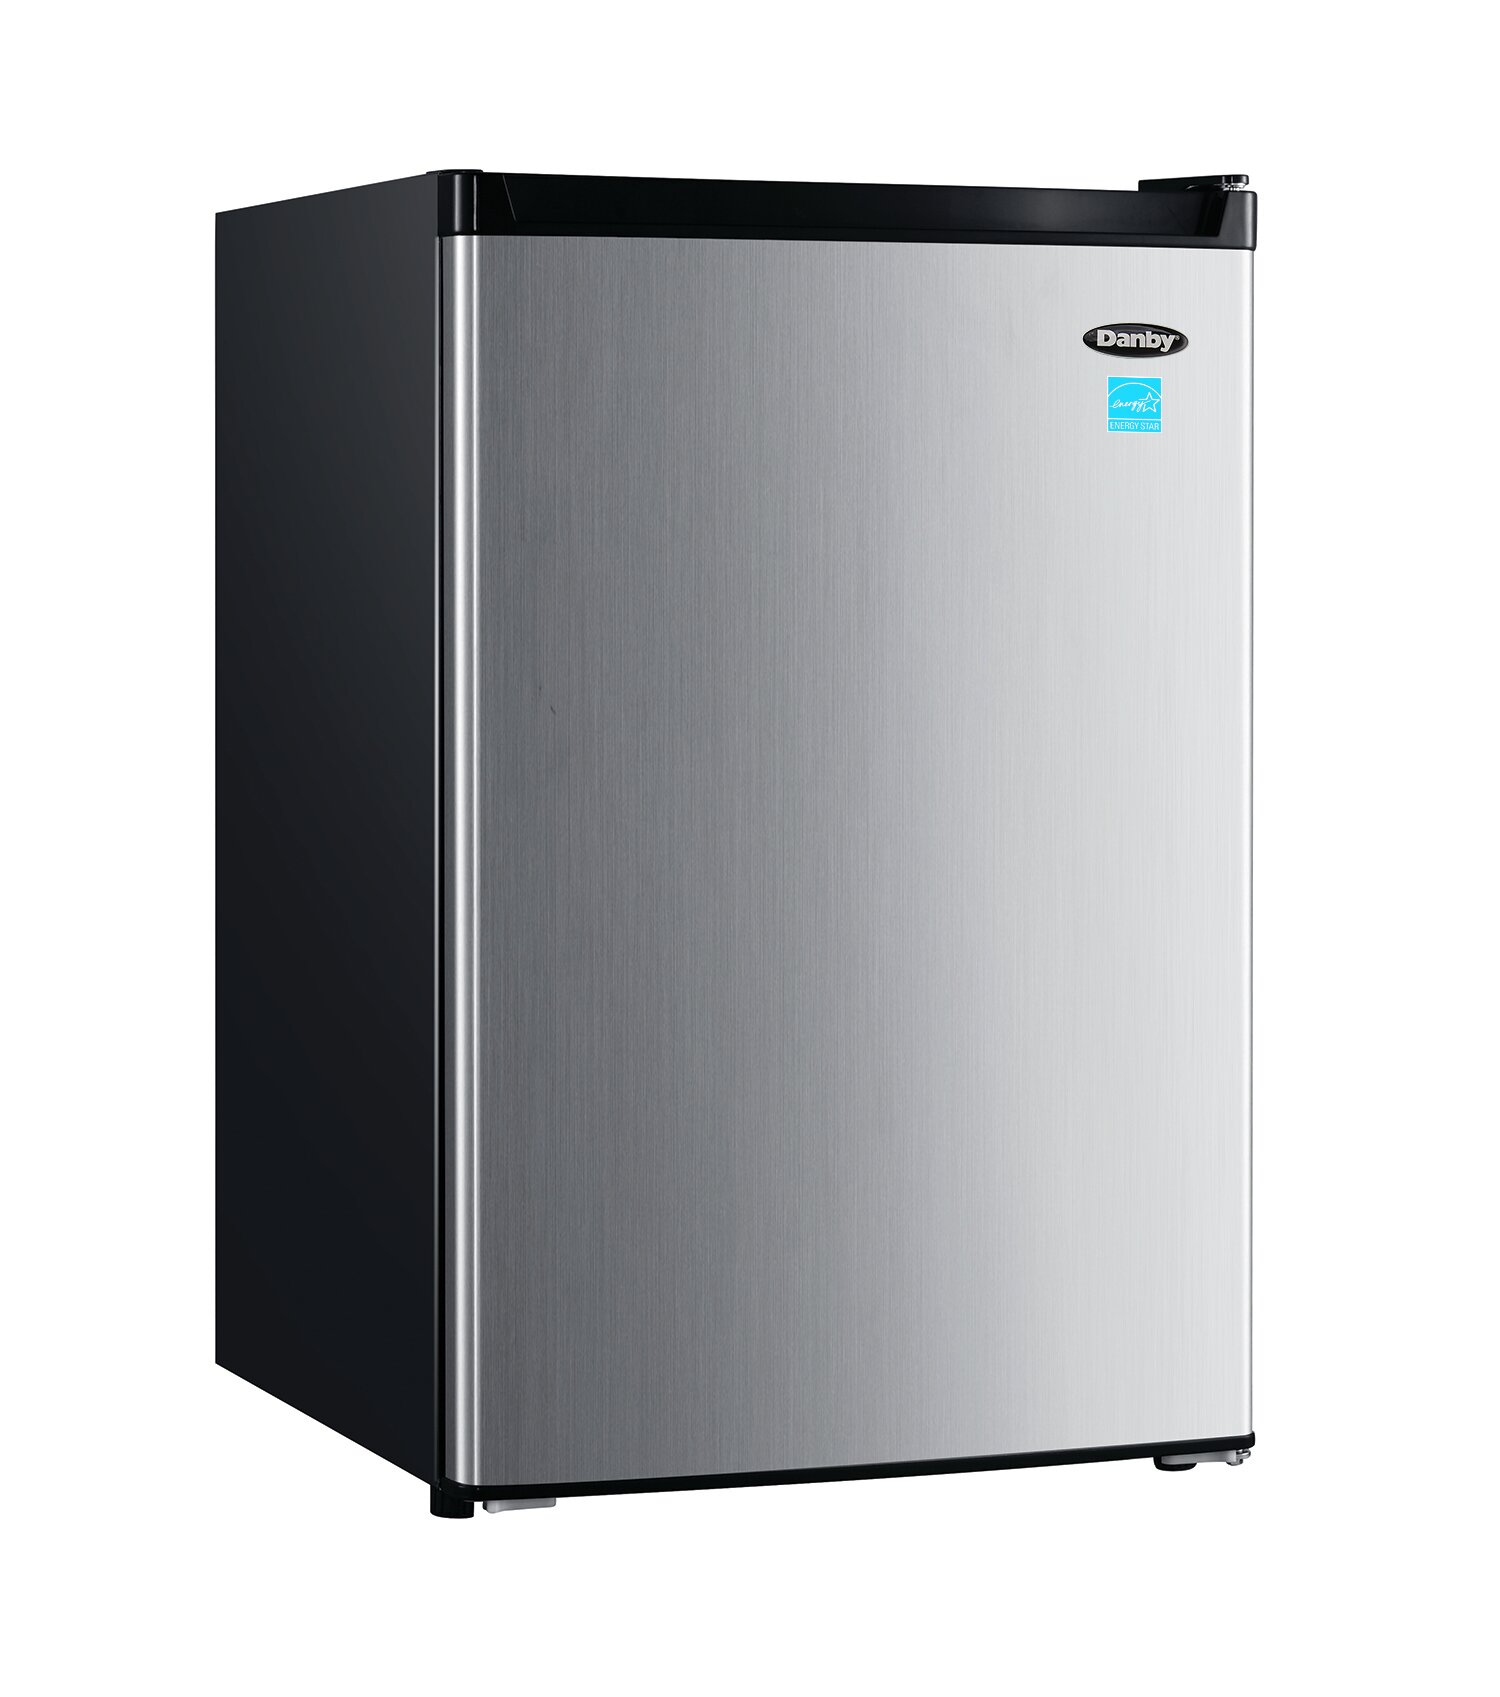 46+ Danby mini fridge no freezer information